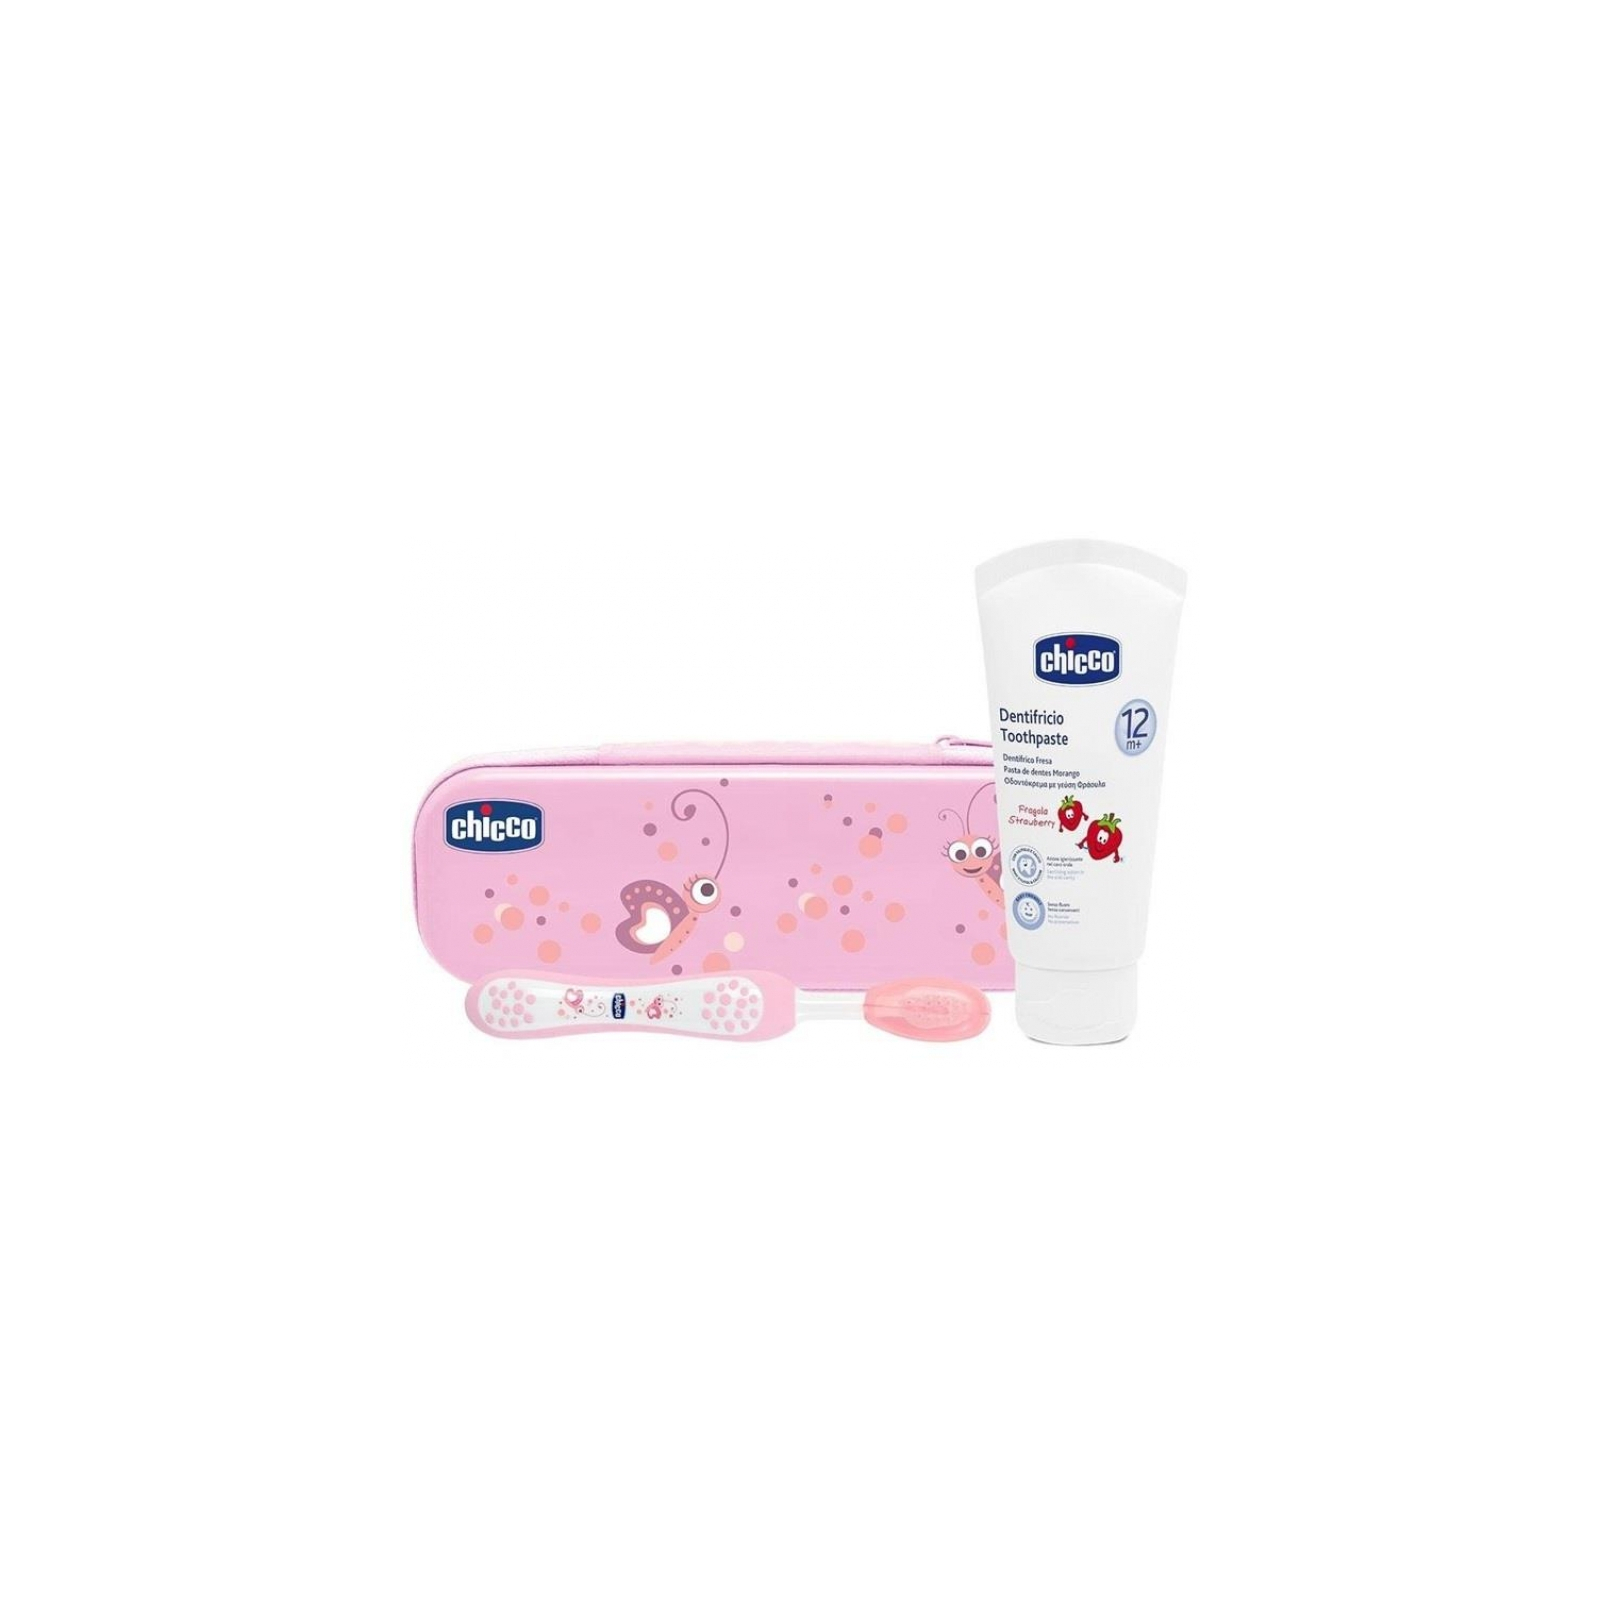 Дитяча зубна щітка Chicco щетка + паста розовый (06959.10) зображення 2